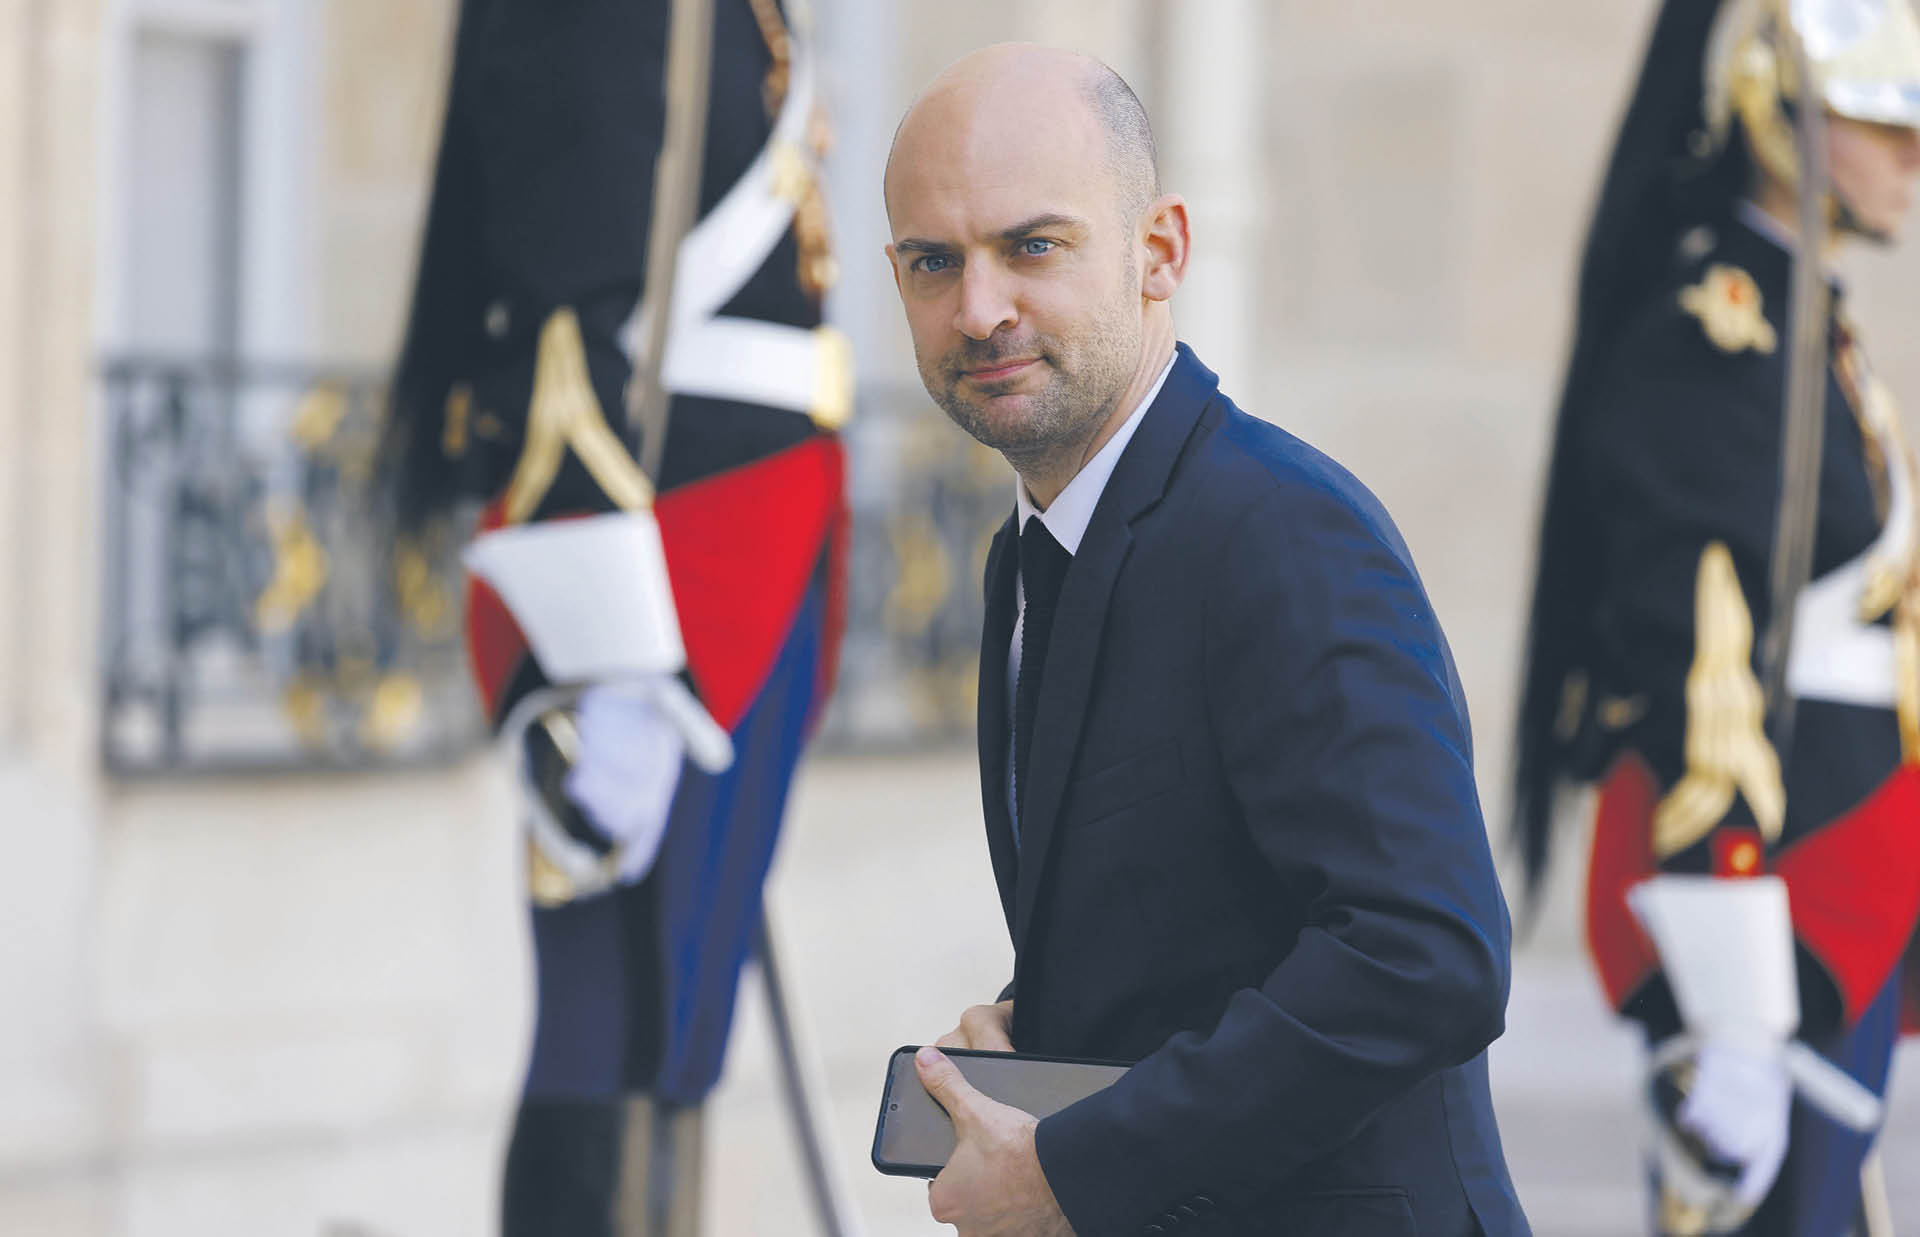 Jean-Noël Barrot, francuski minister ds. europejskich, przyznał, że kraj jest przytłoczony skalą zjawiska